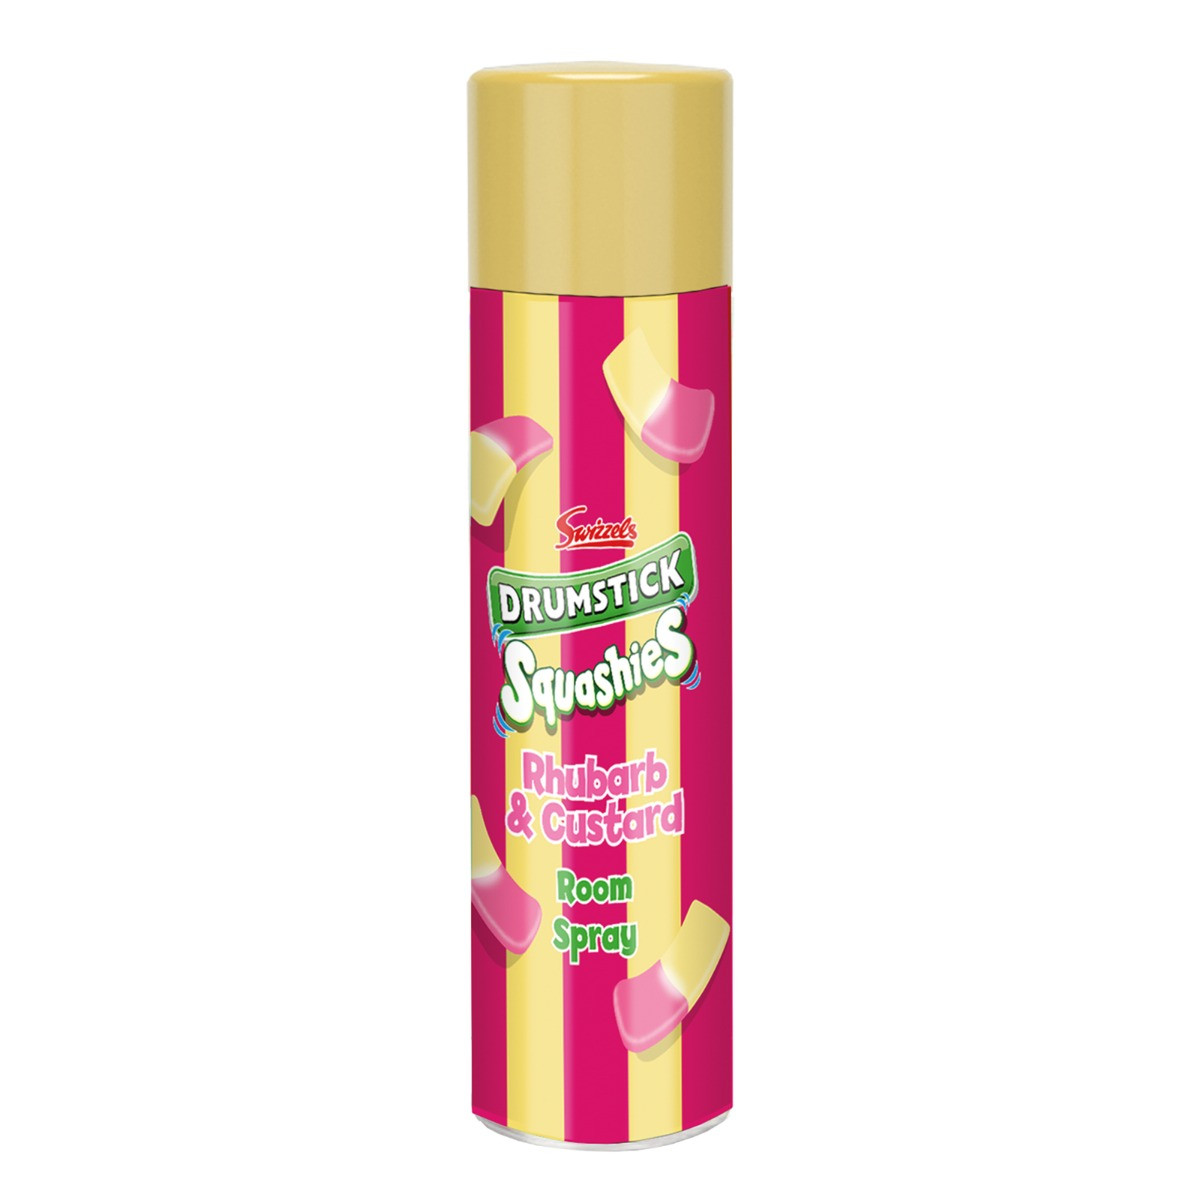 Swizzels 300ml Room Spray - Rhubarb & Custard>